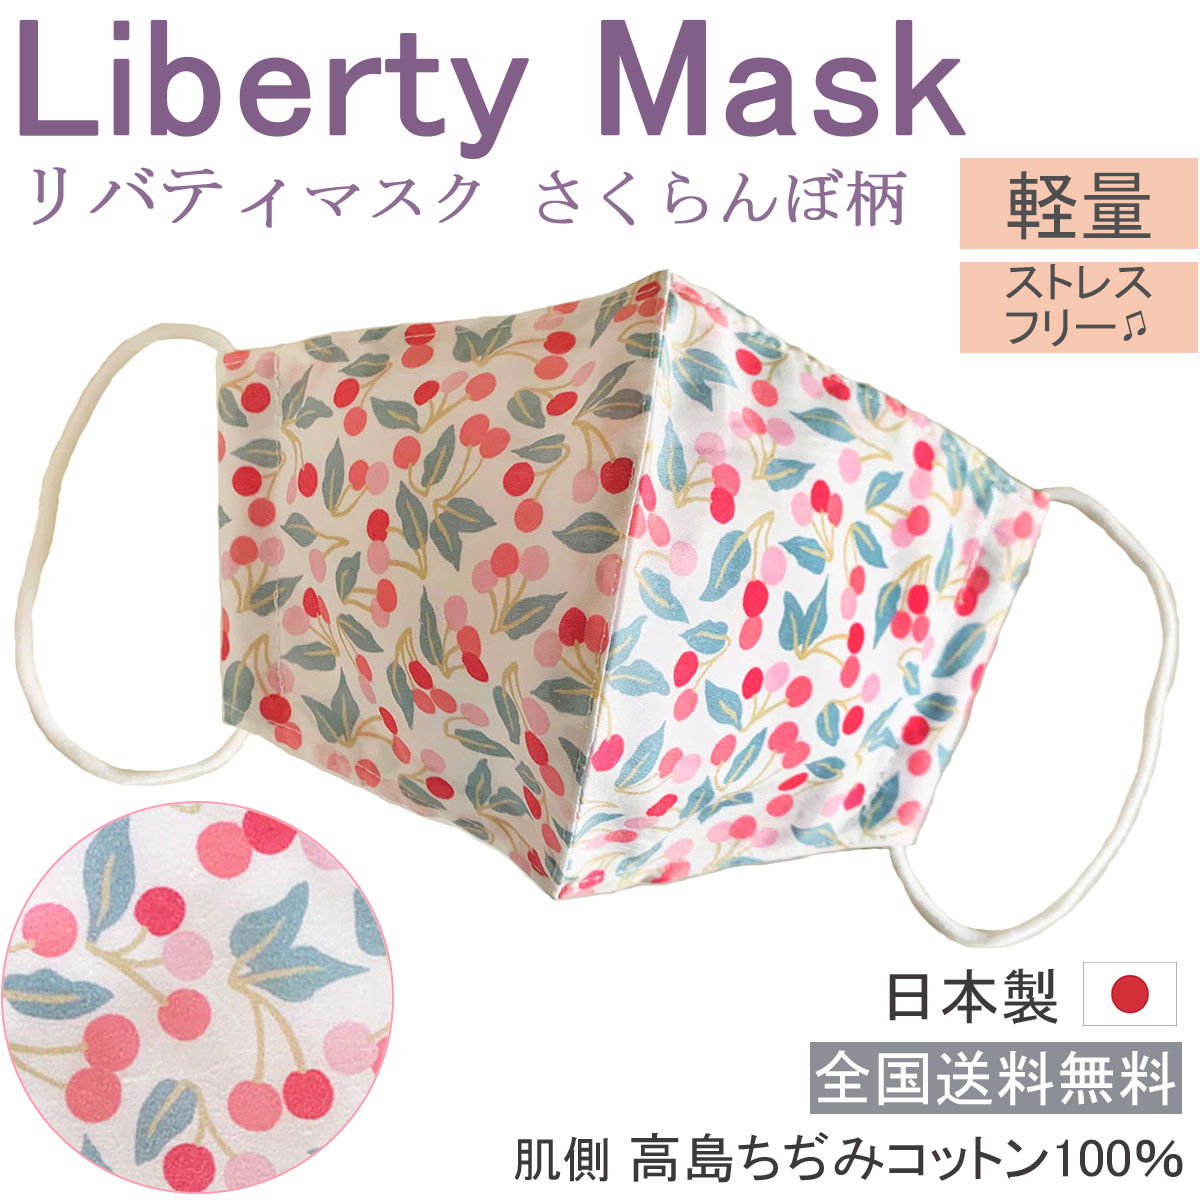 贈り物としてもぜひ！人気のリバティ生地を使った日本製マスクです。コットン生地でお肌にも優しい、シャープ＆立体的に仕上げました。洗って繰り返し使用いただけます。